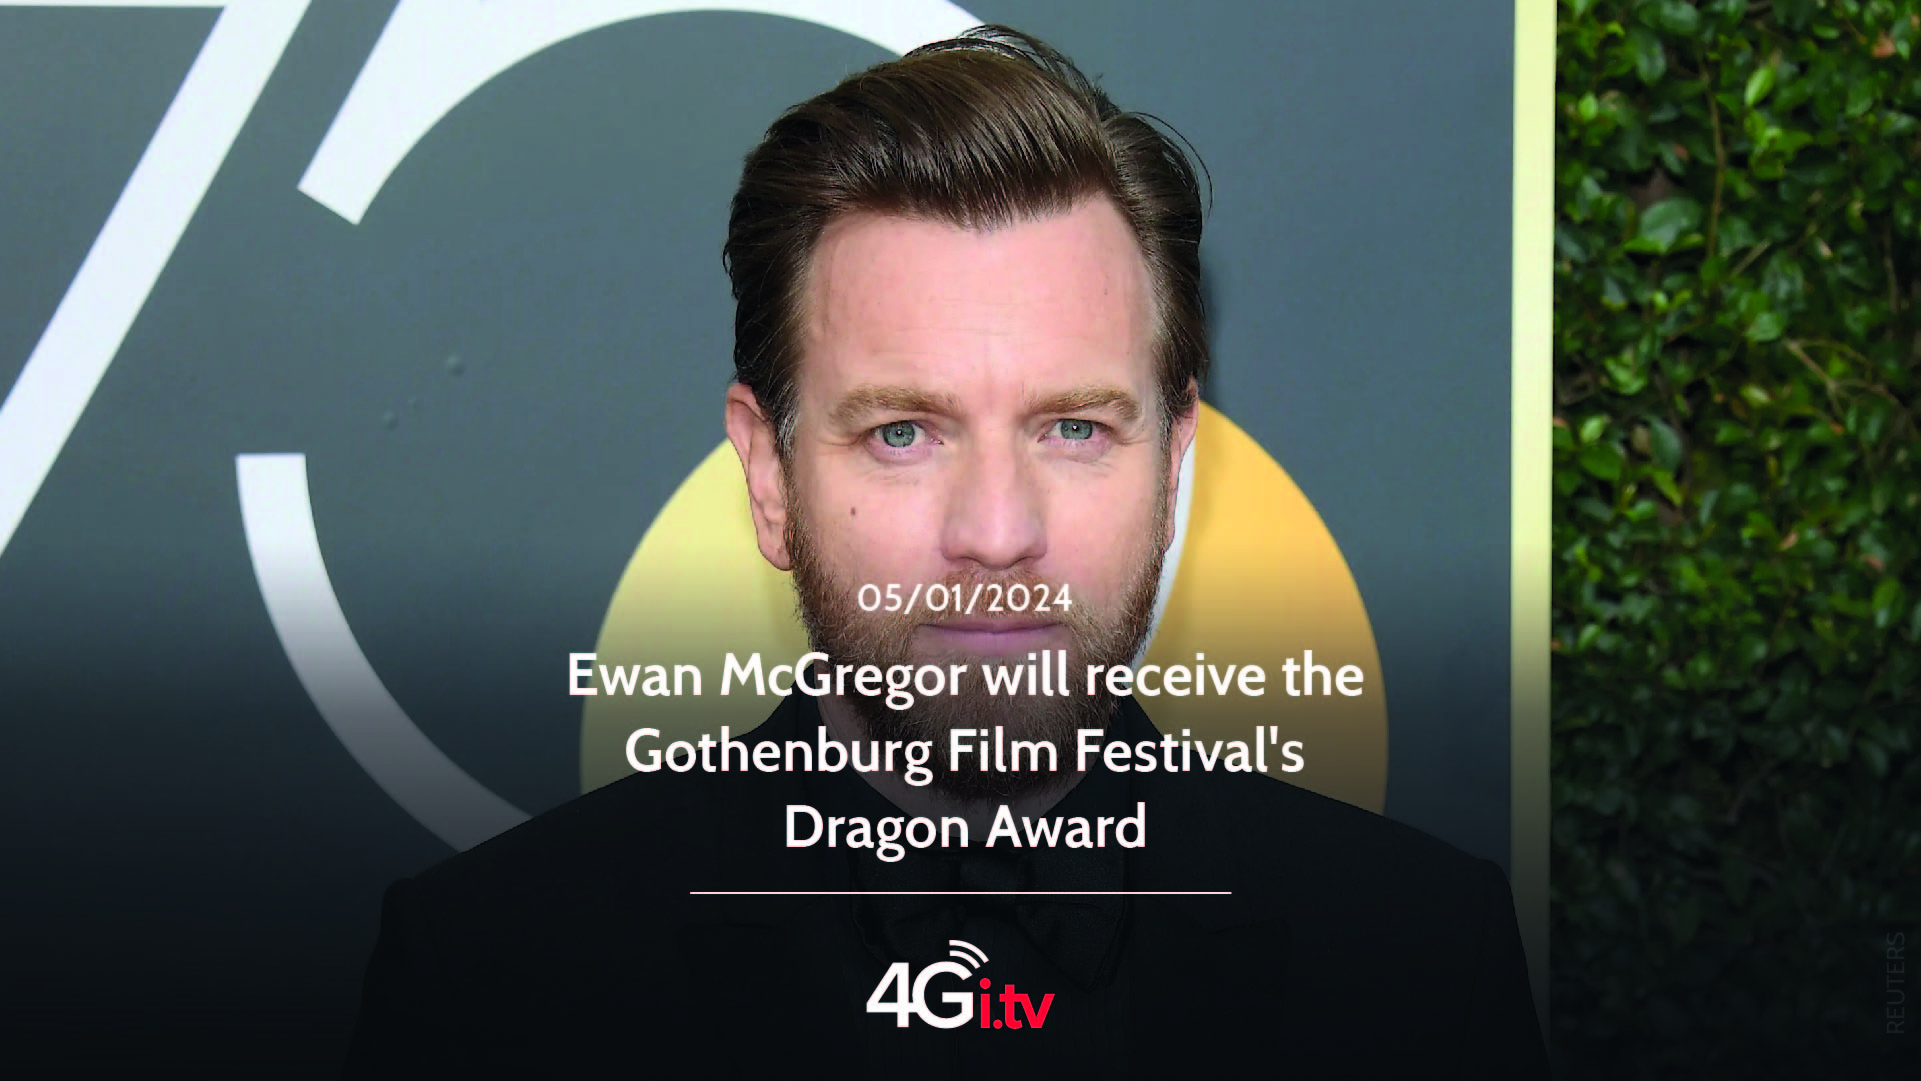 Lesen Sie mehr über den Artikel Ewan McGregor will receive the Gothenburg Film Festival’s Dragon Award